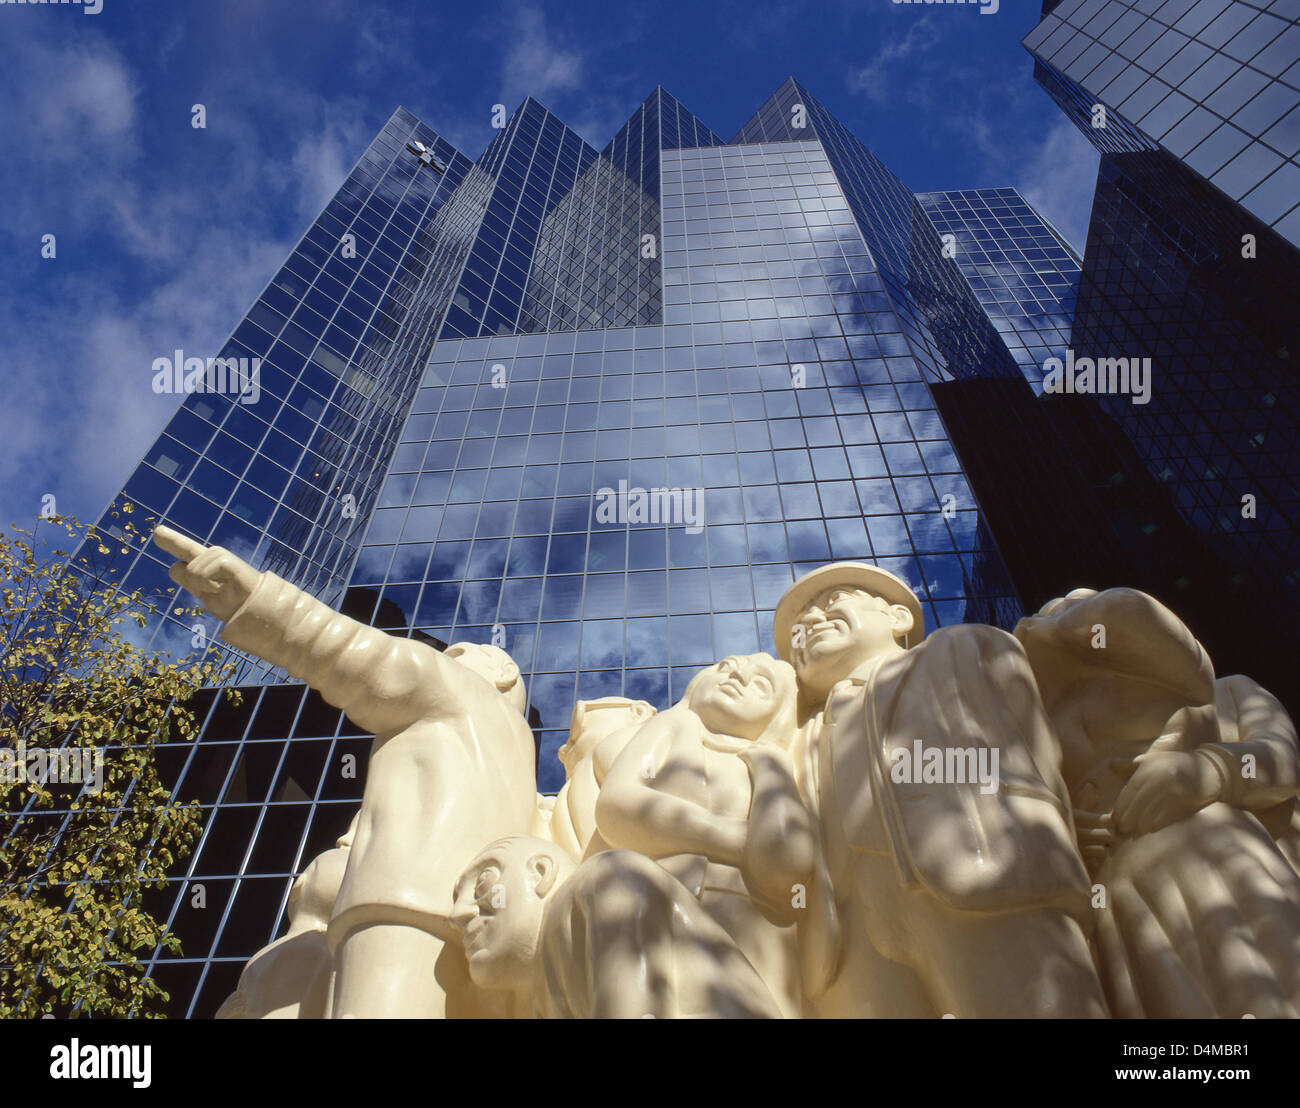 Banque Nationale de Paris "la sculpture la foule illuminée', dans le centre-ville de Montréal (Ville de Montréal), Québec, Canada Banque D'Images